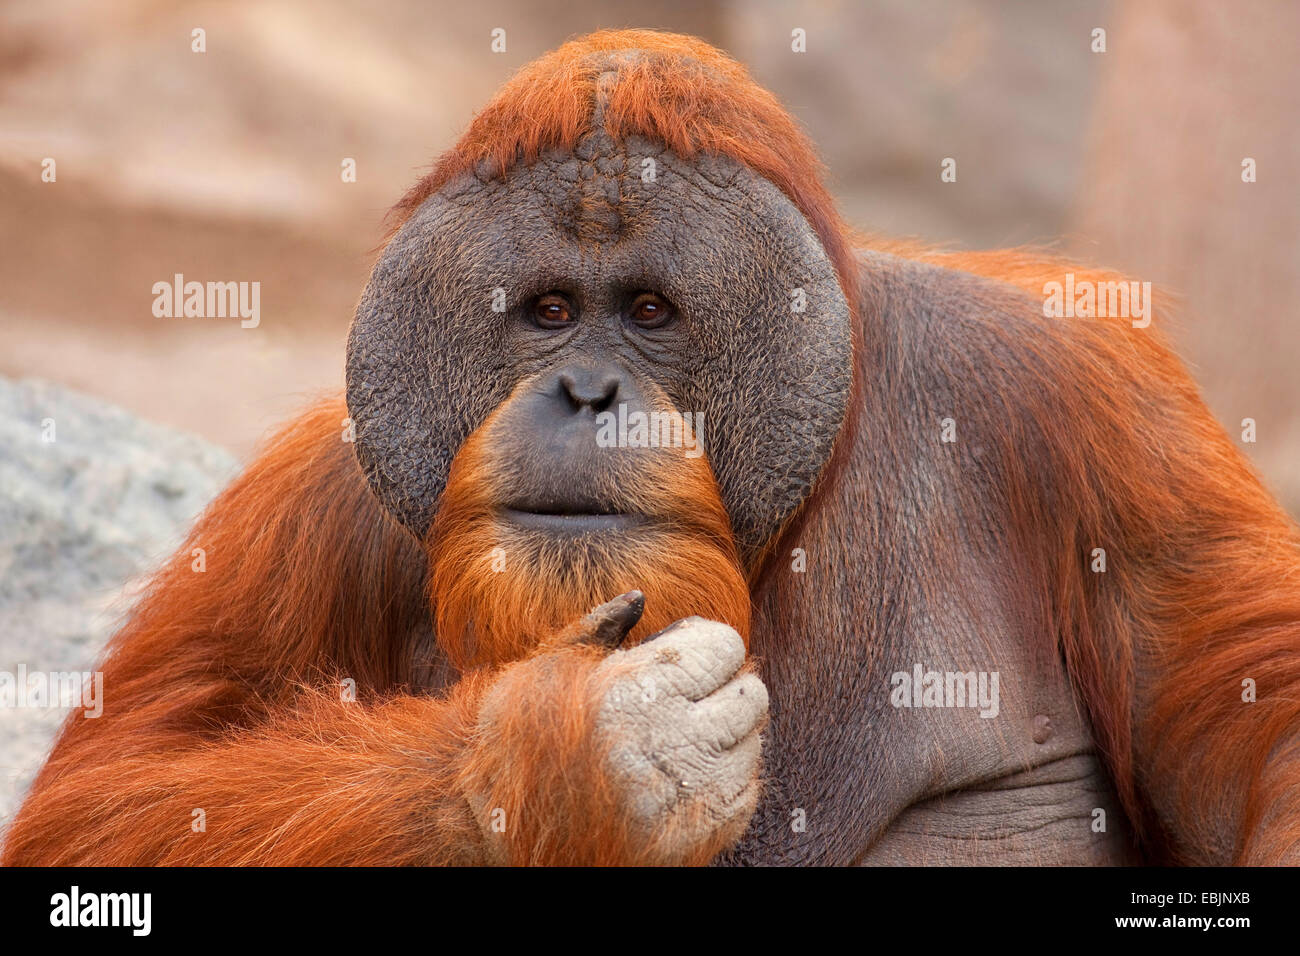 Bornean orangutan (Pongo pygmaeus pygmaeus), male scratching his chin thoughtfully, Indonesia, Borneo Stock Photo